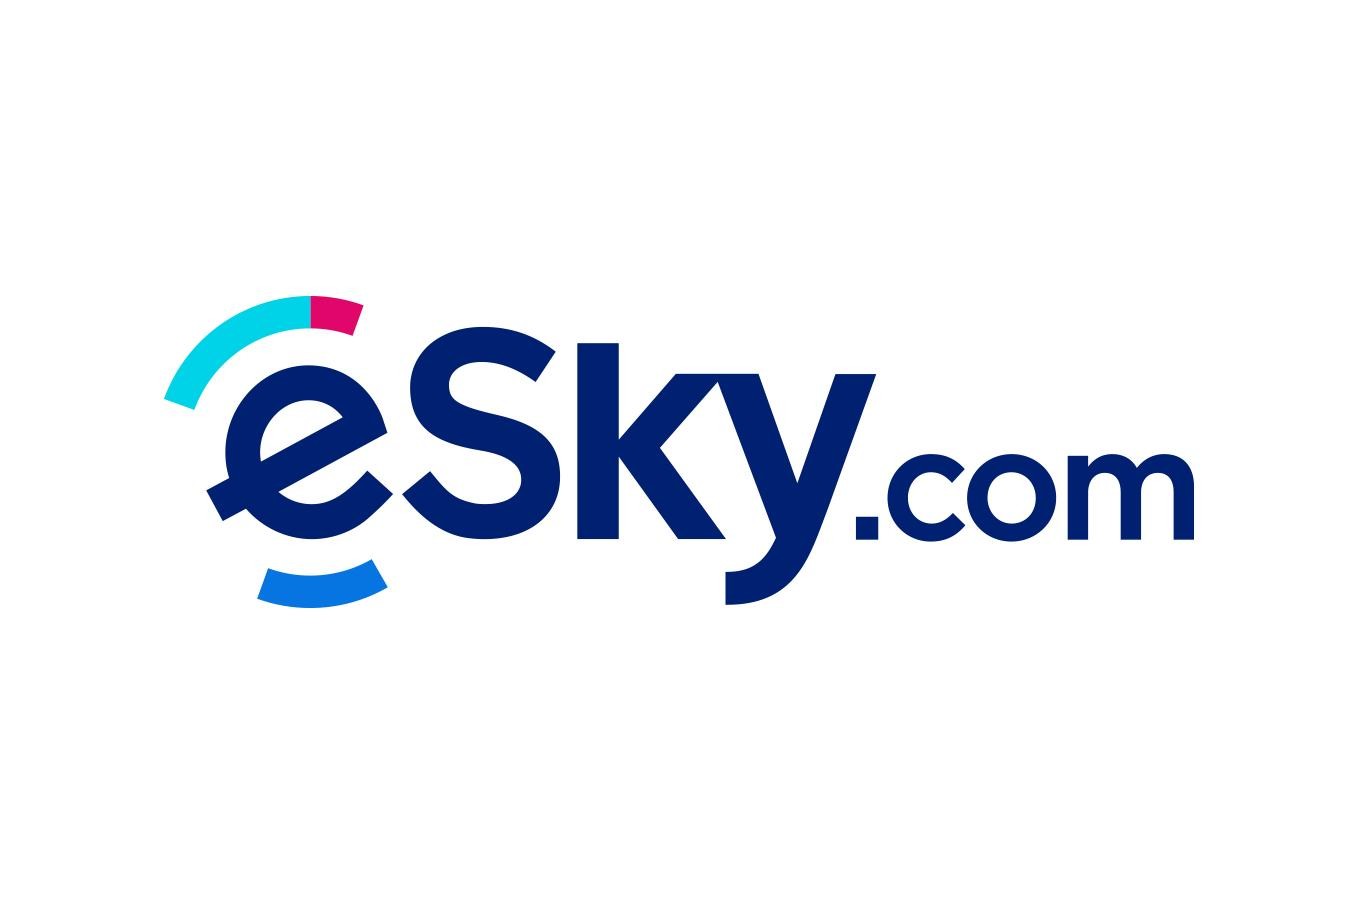 eSky.pl